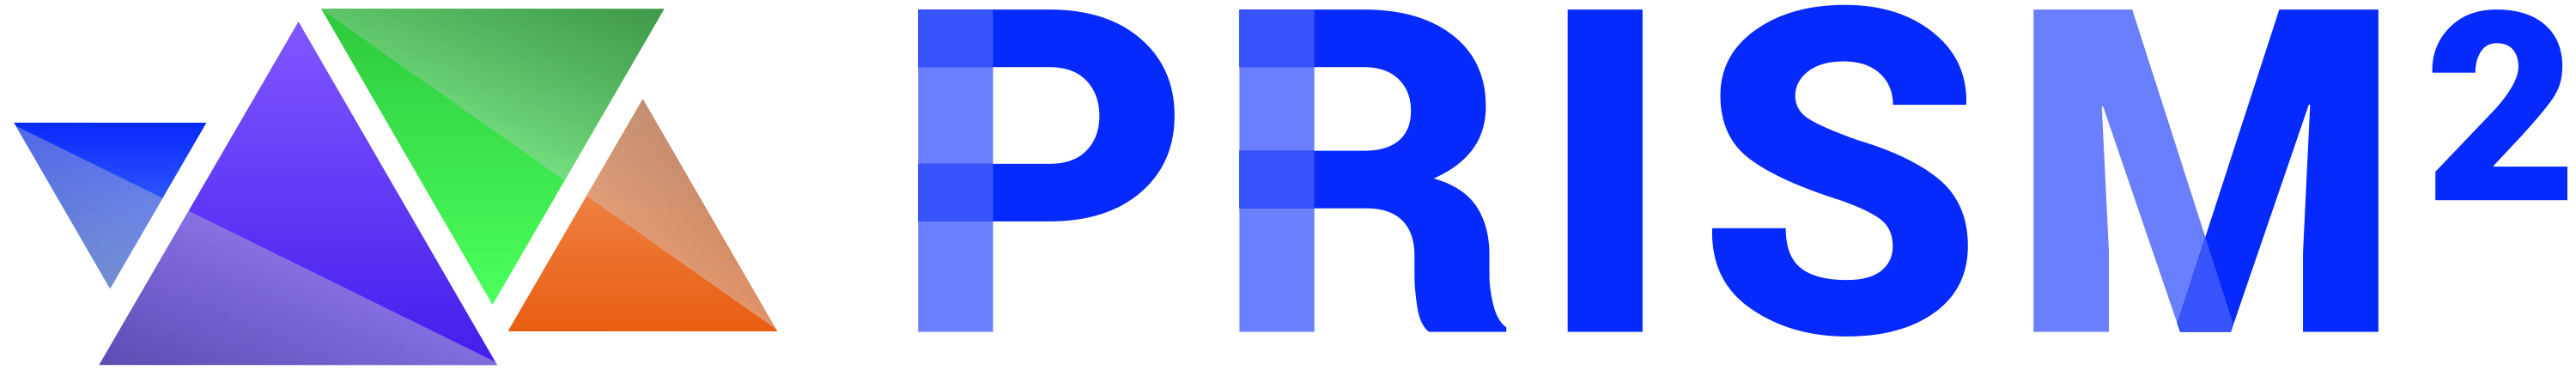 PRISM logo